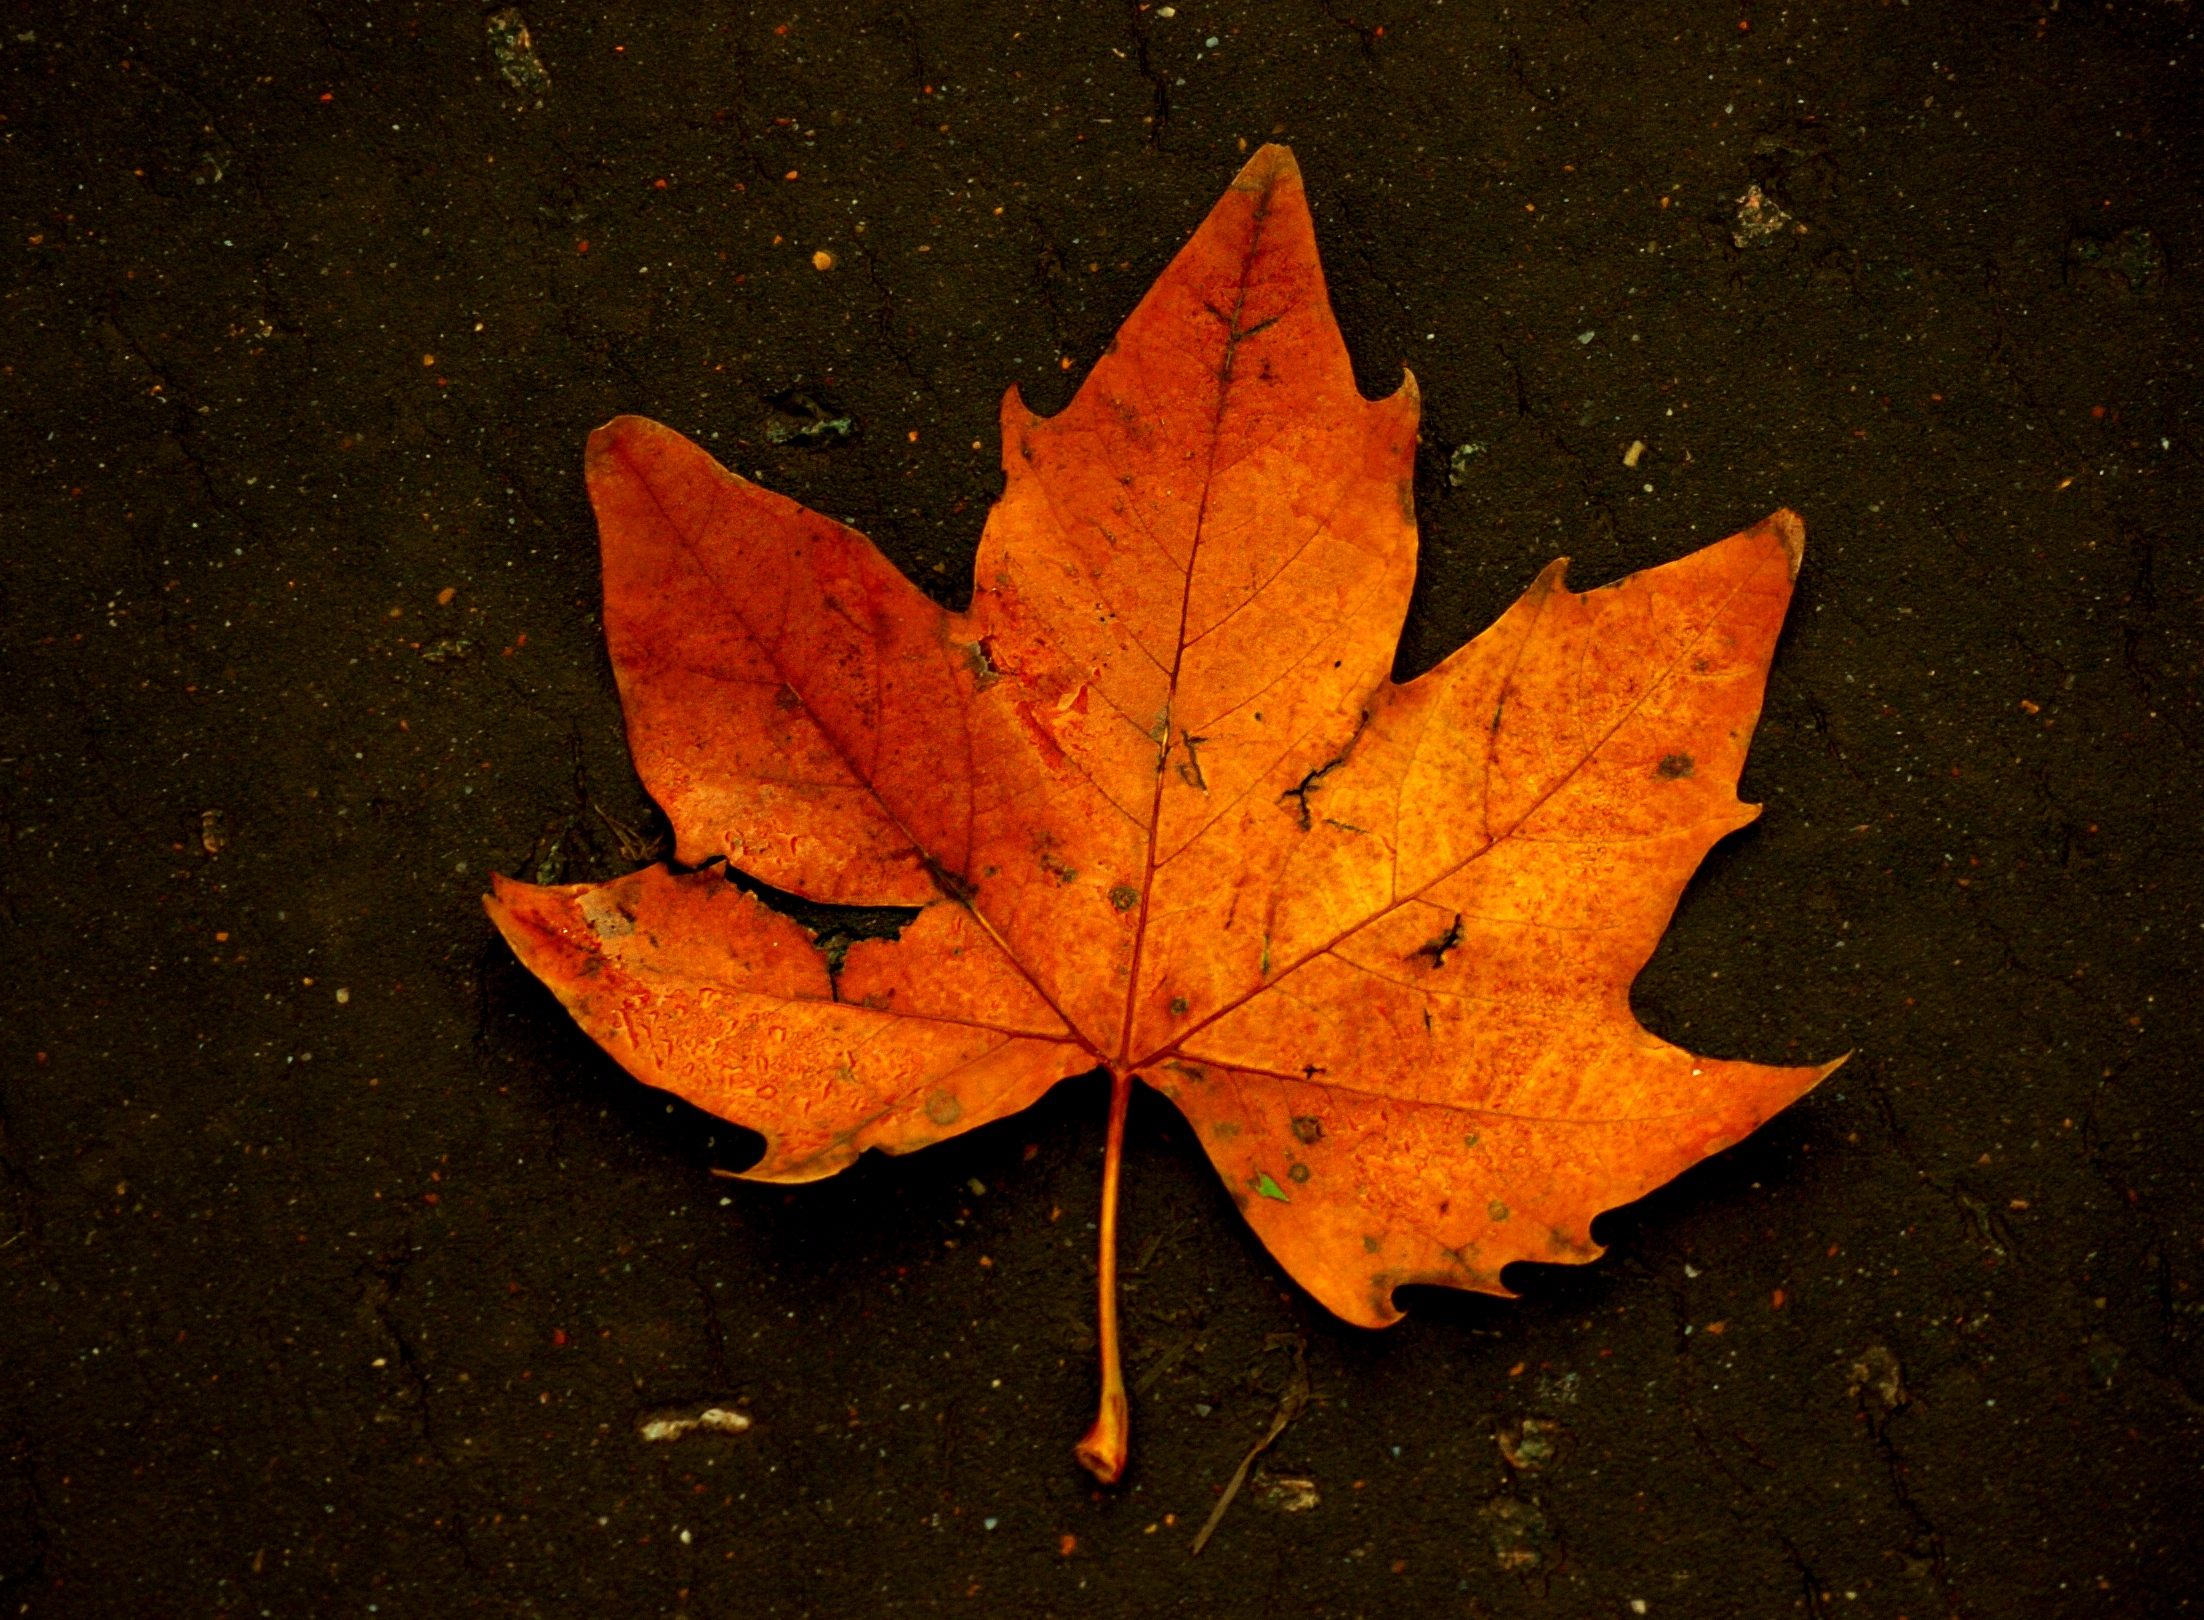 File:Fallen leaf on wet tarmac.JPG - Wikimedia Commons